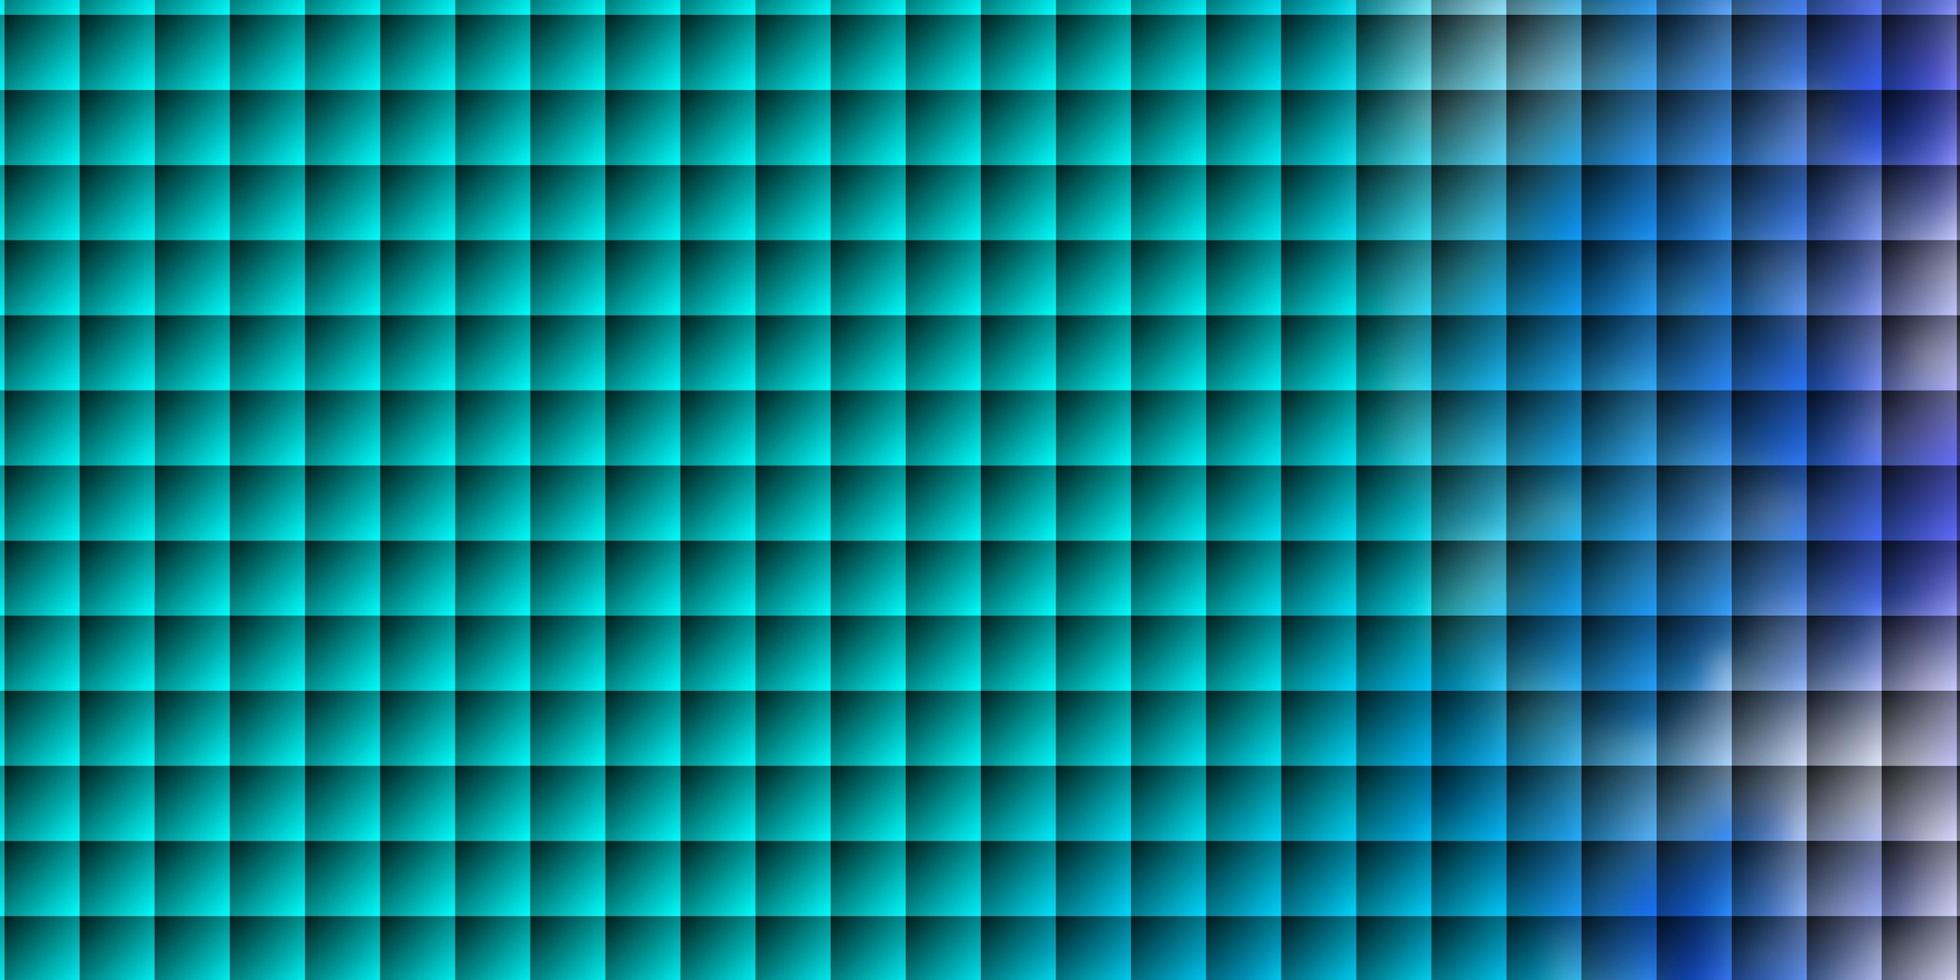 padrão de vetor rosa claro, azul em estilo quadrado.